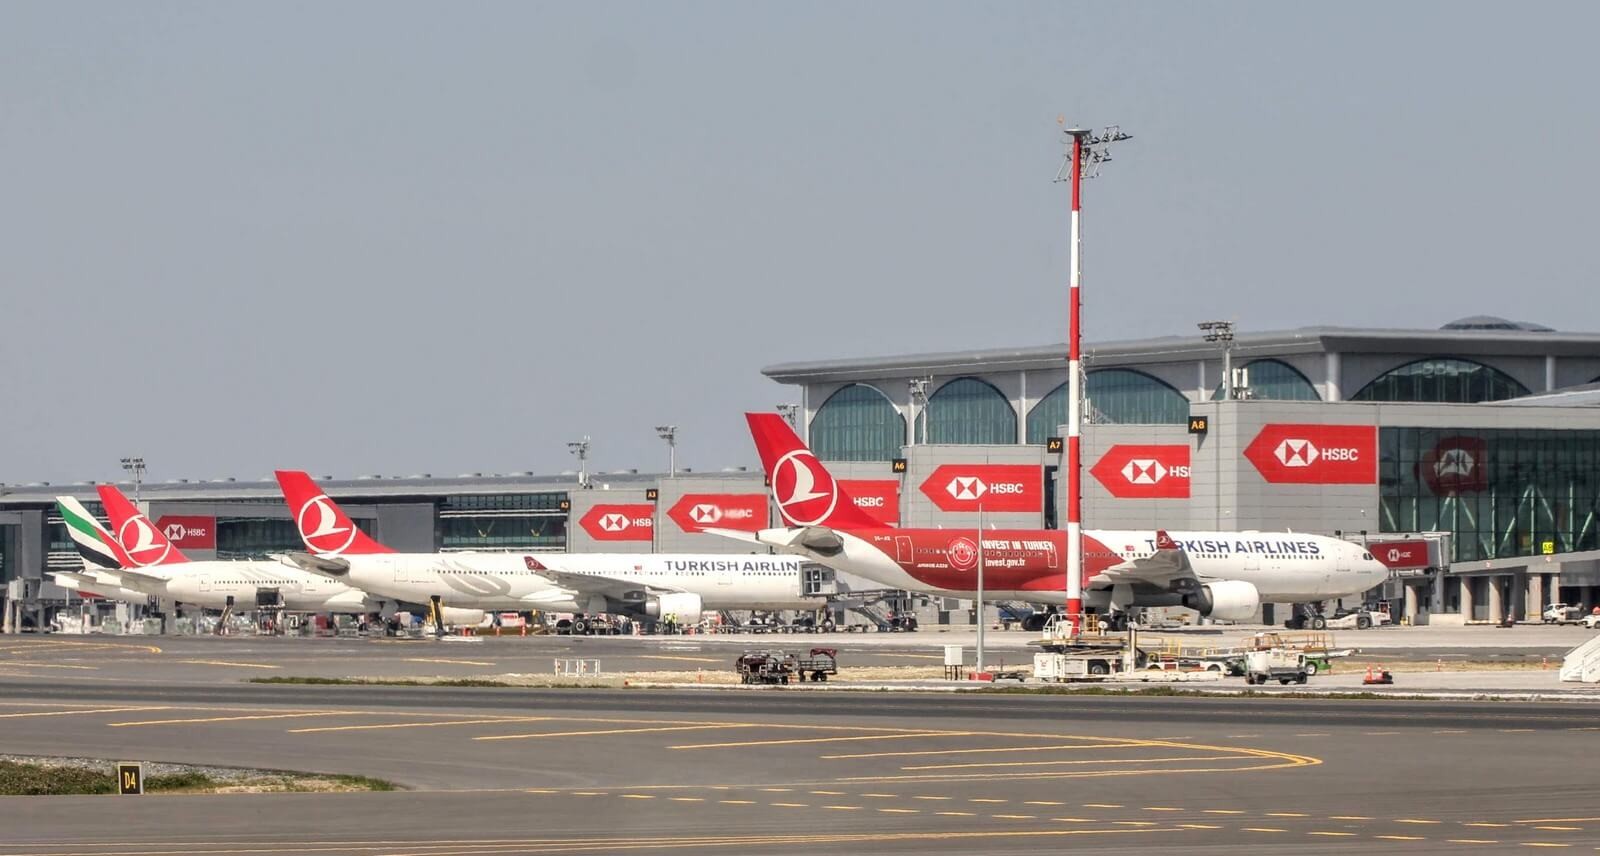 Стамбул новый аэропорт сайт. Аэропорт Стамбул Ататюрк Турция. Аэропорт Стамбула ist. Аэропорт Турции Стамбул новый. Стамбул новый аэропорт ist.